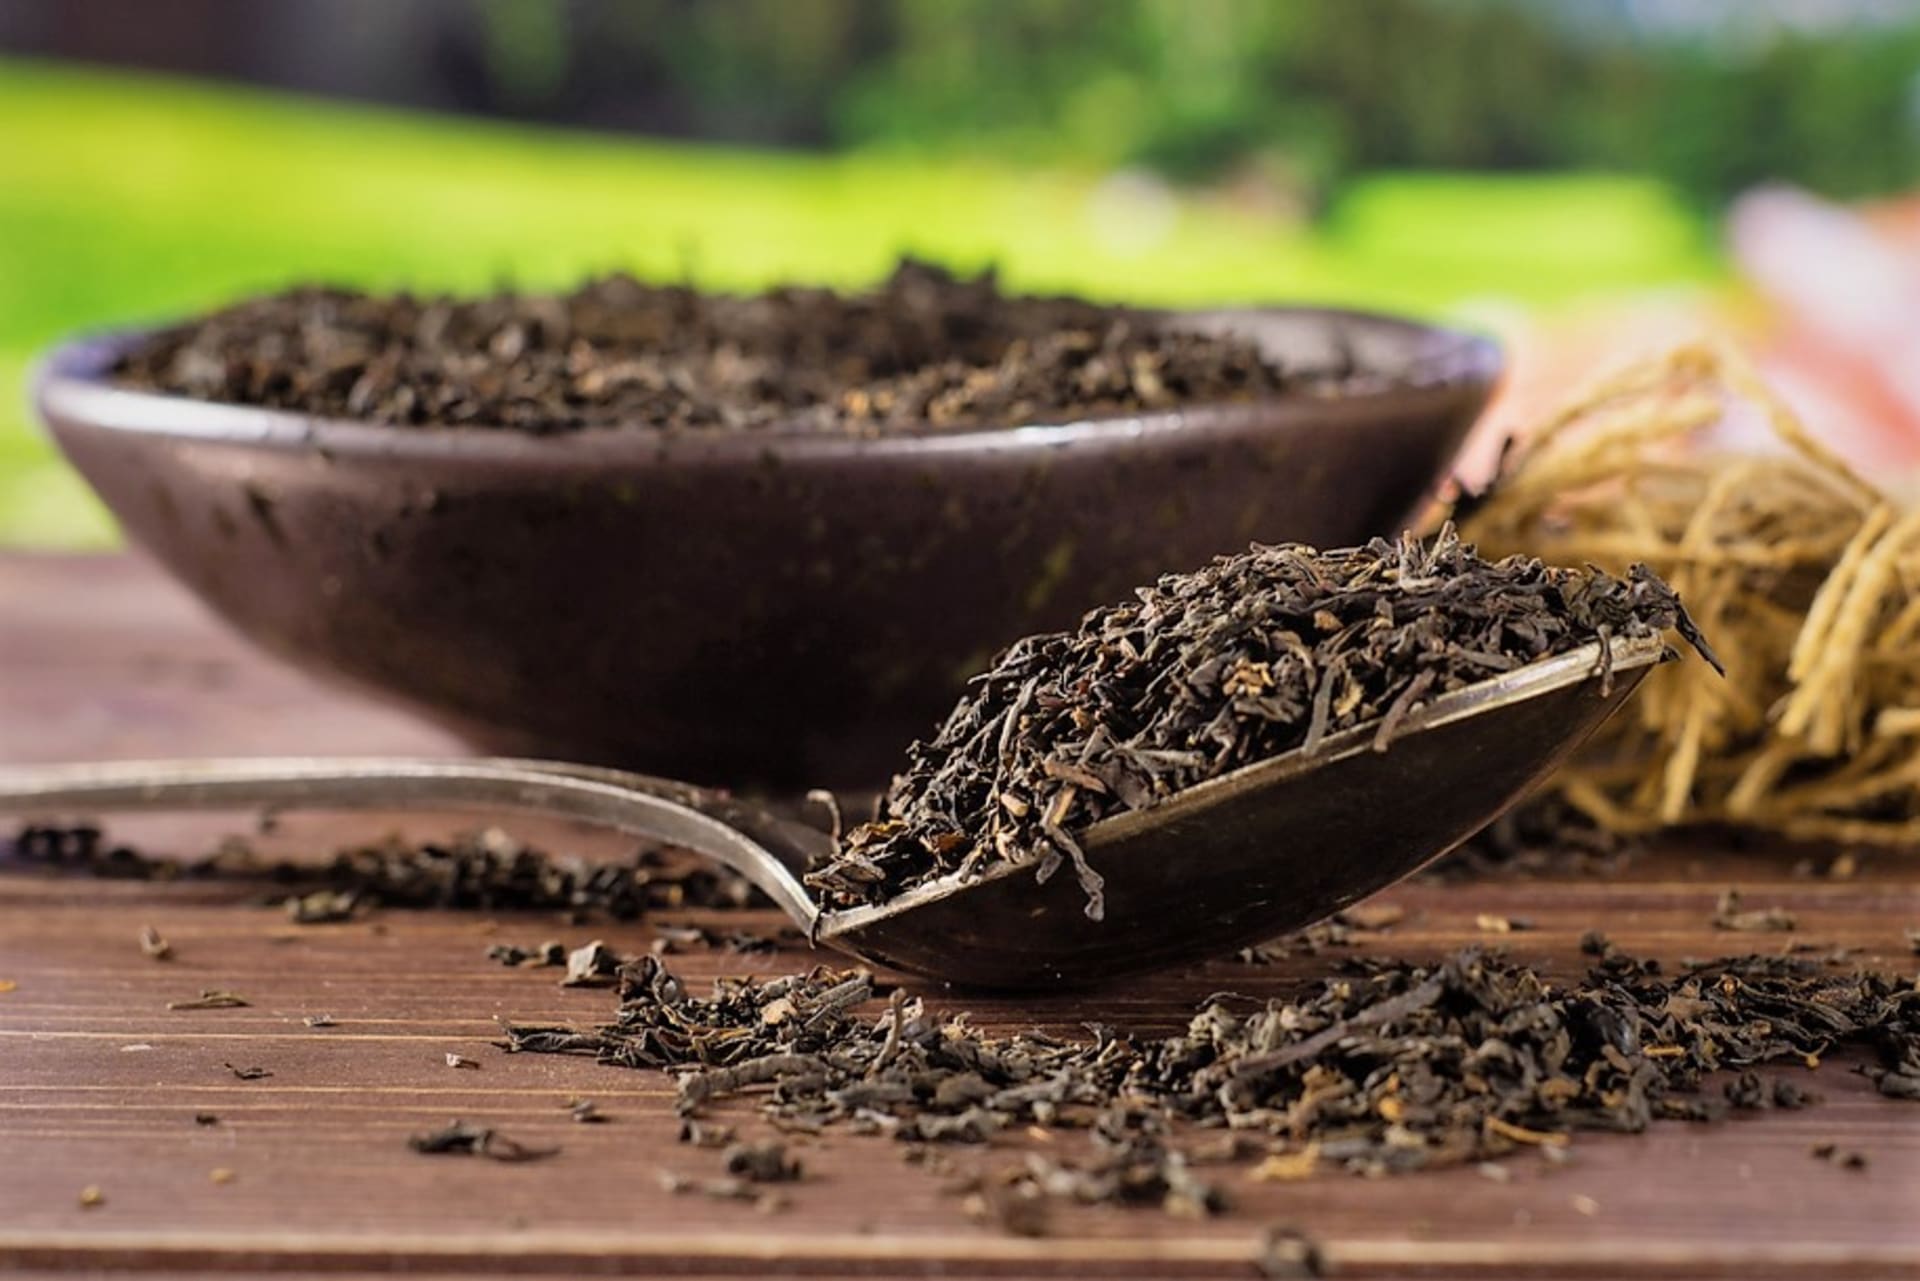 Společenské a komunikativní Váhy většinou zbožňují pravý Earl Grey, což je kvalitní černý čaj v kombinaci s bergamotovou silicí